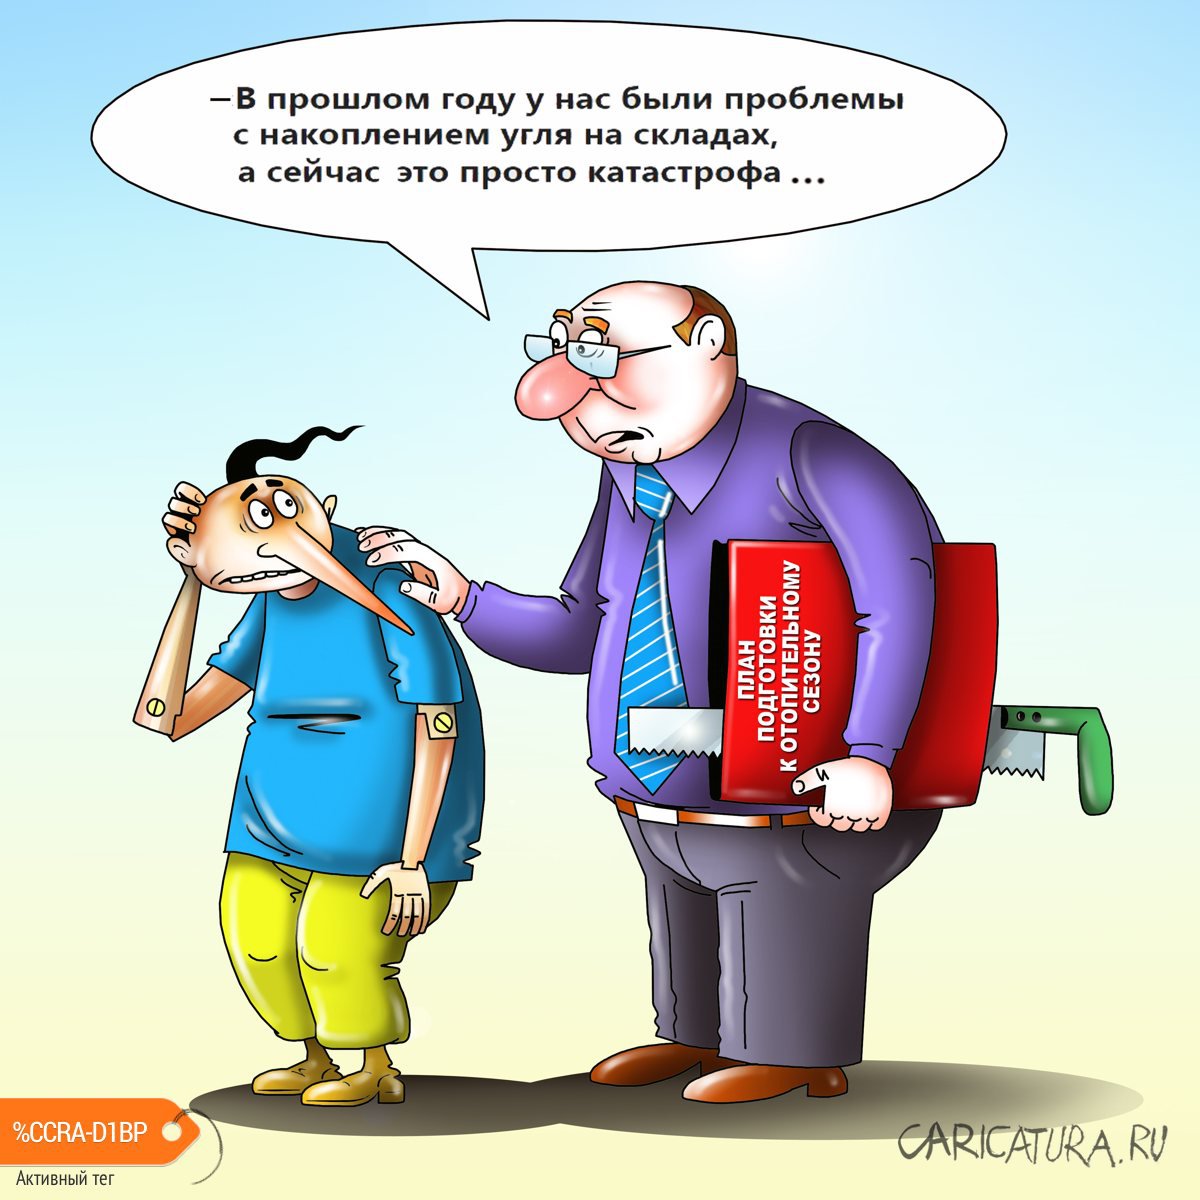 Карикатура "Катастрофа с углем", Сергей Корсун